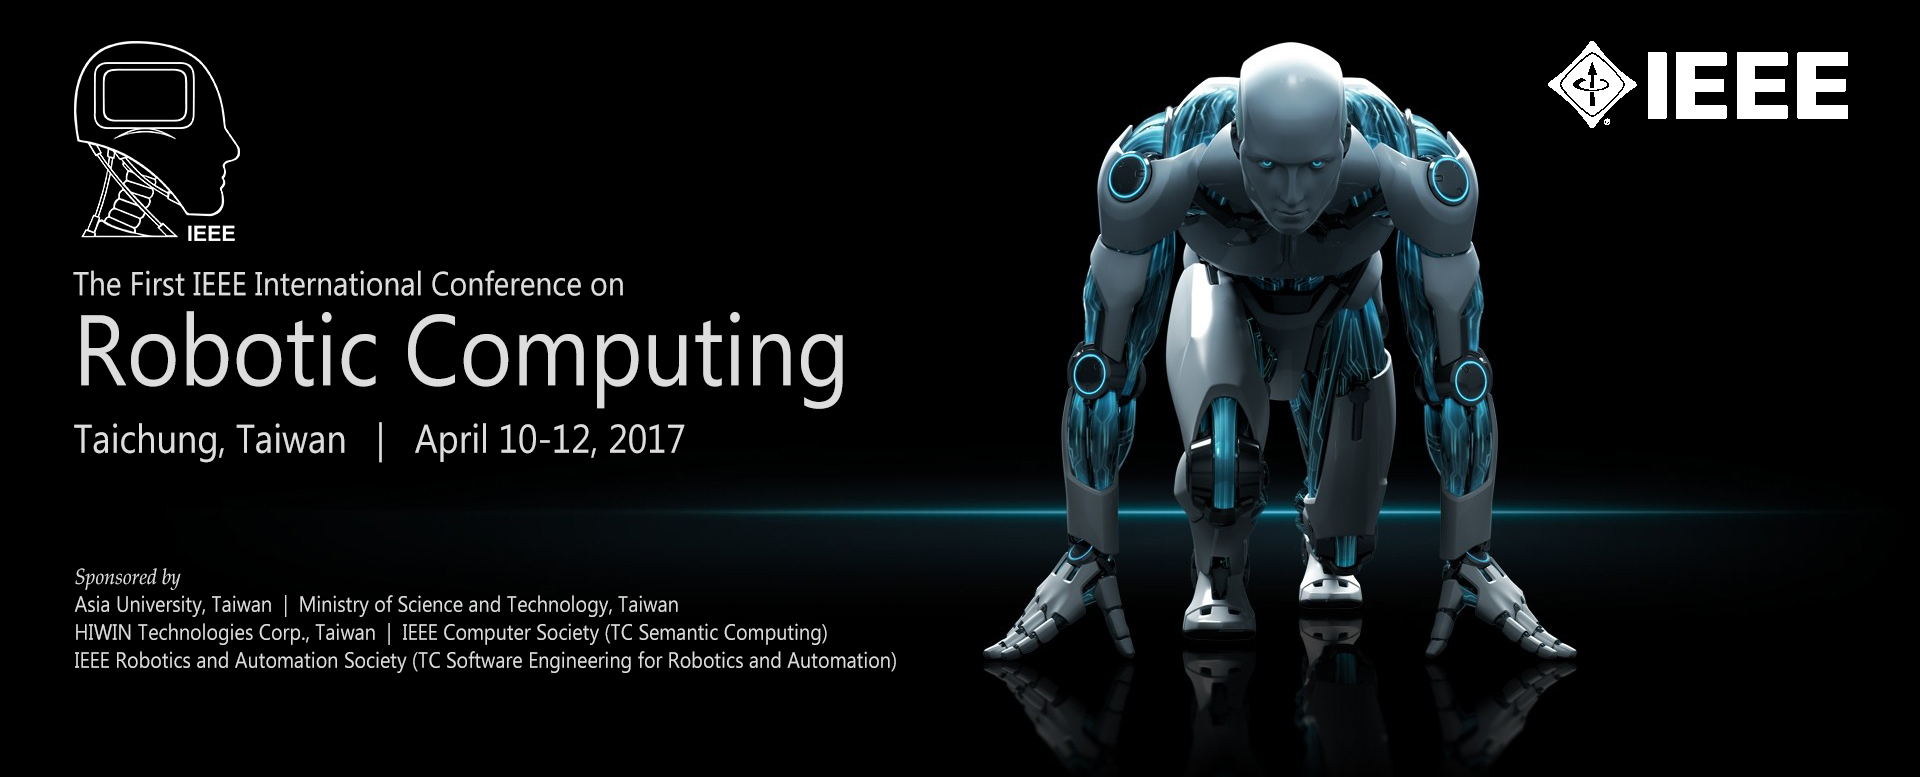 IEEE Robotic Computing 2017